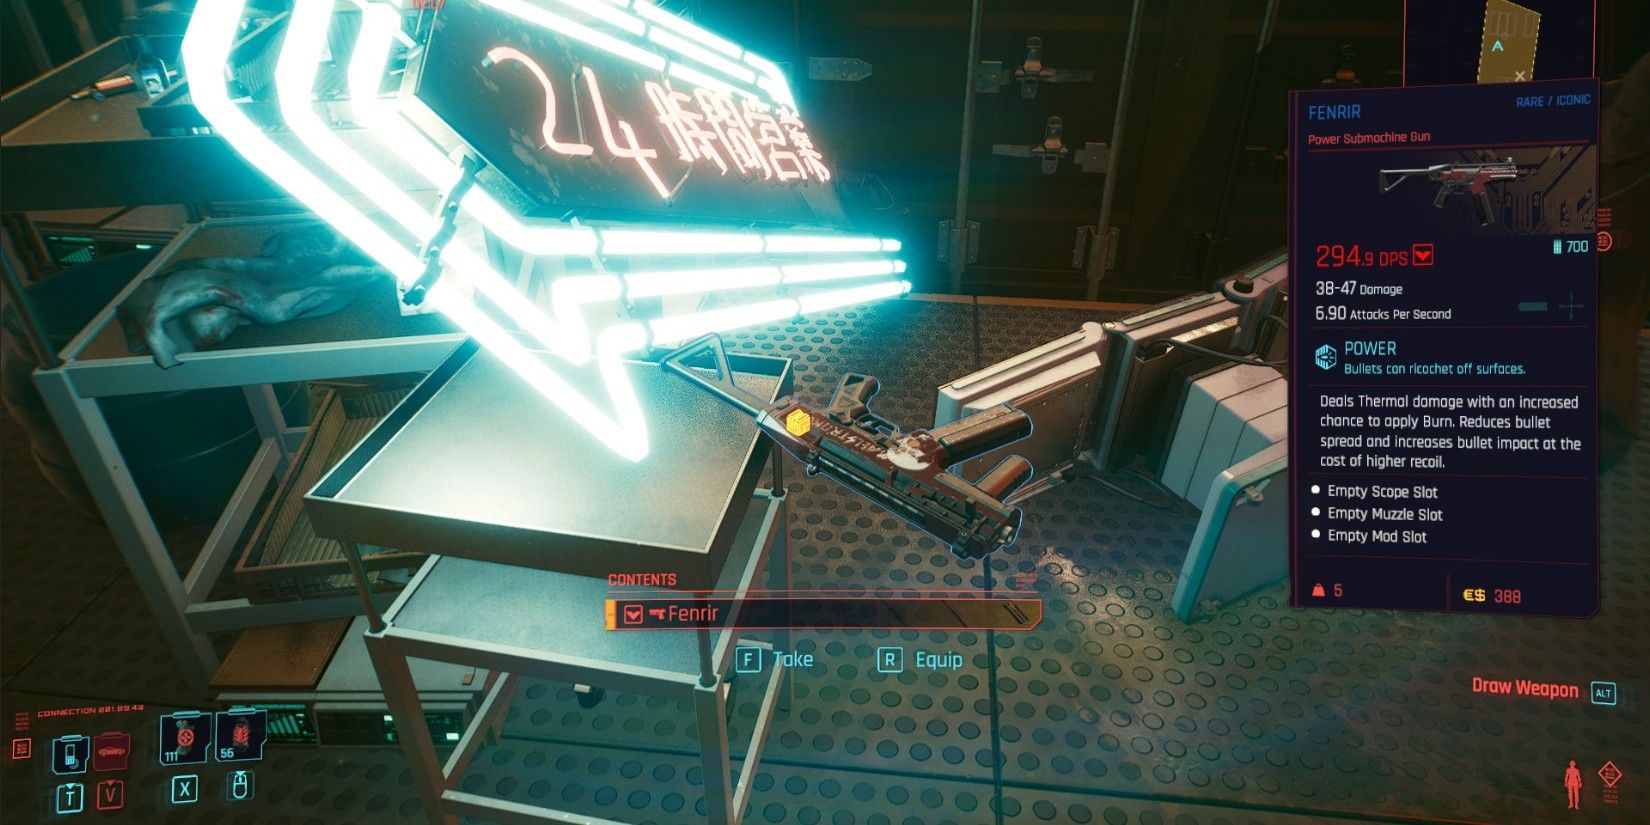 El jugador encuentra la metralleta Fenrir sobre una mesa en Cyberpunk 2077